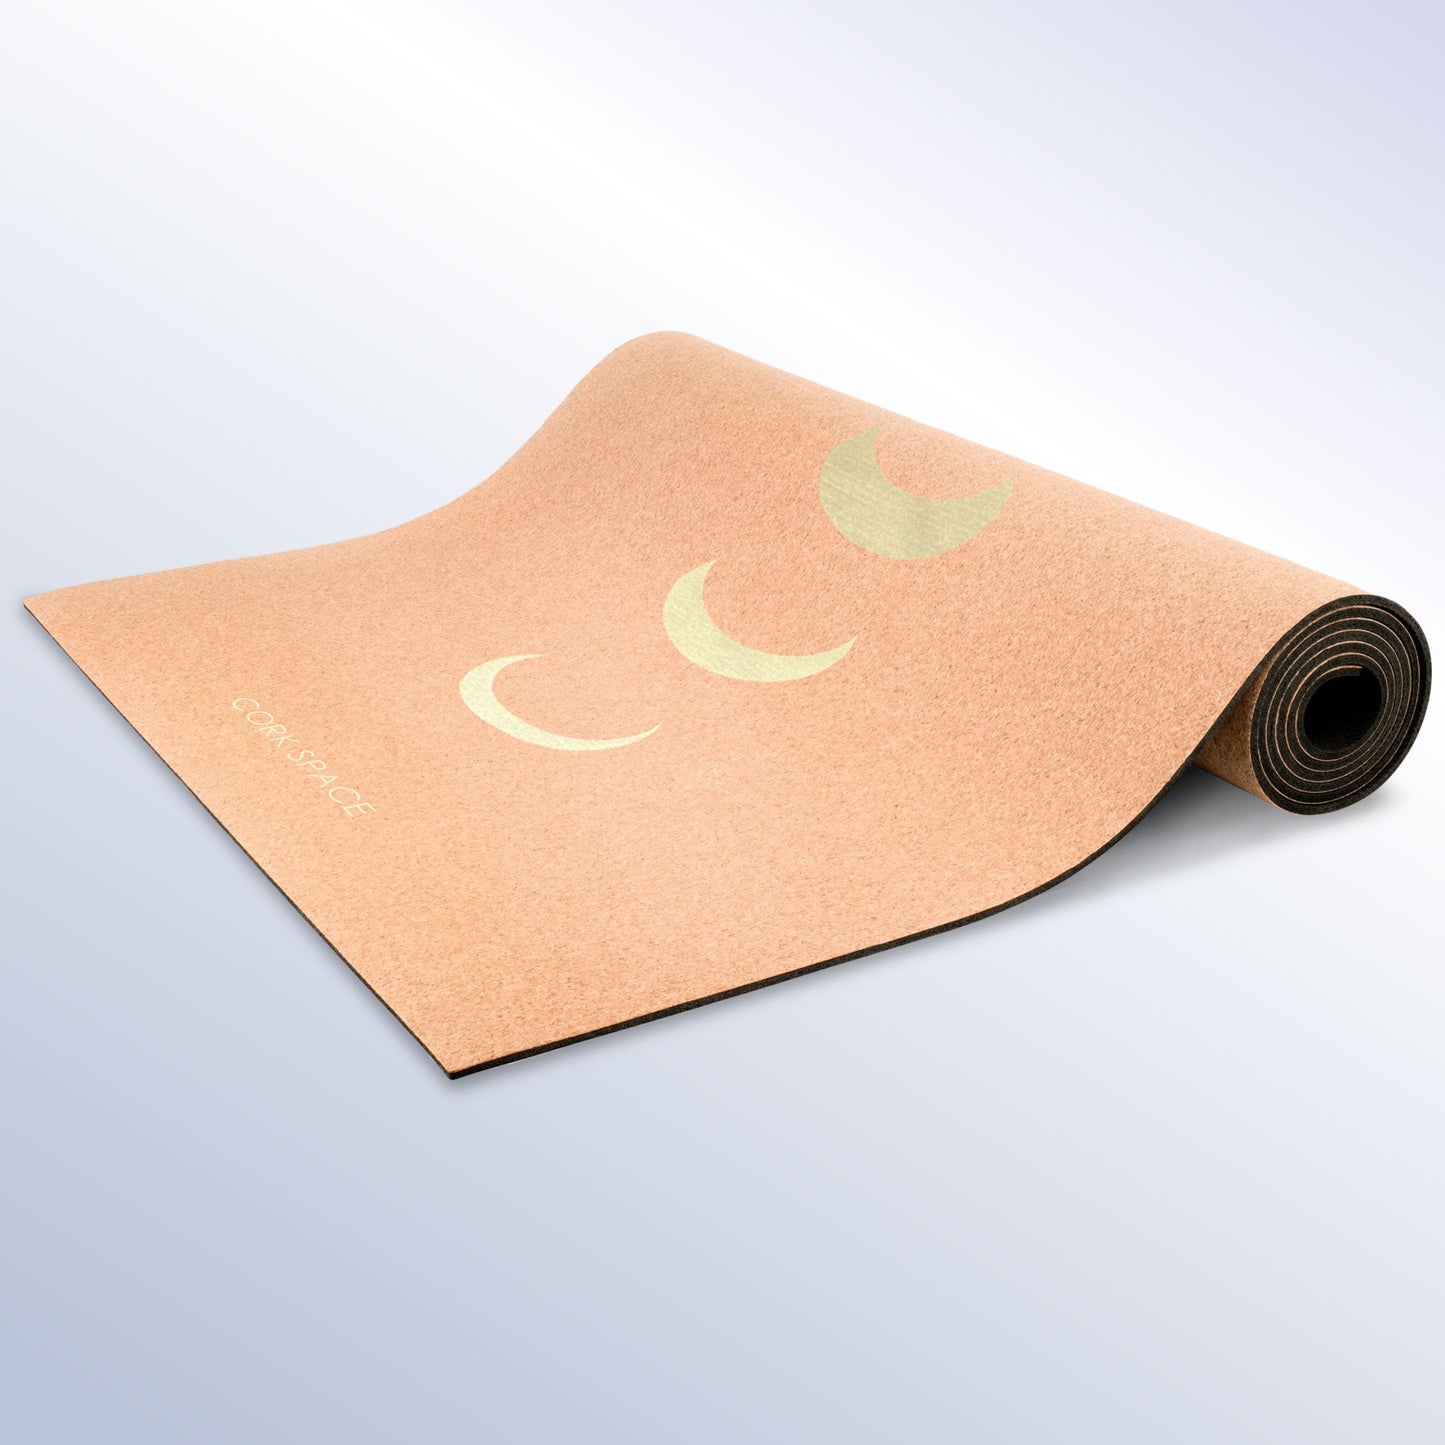 Pro Golden Moon Cork Yoga Mat